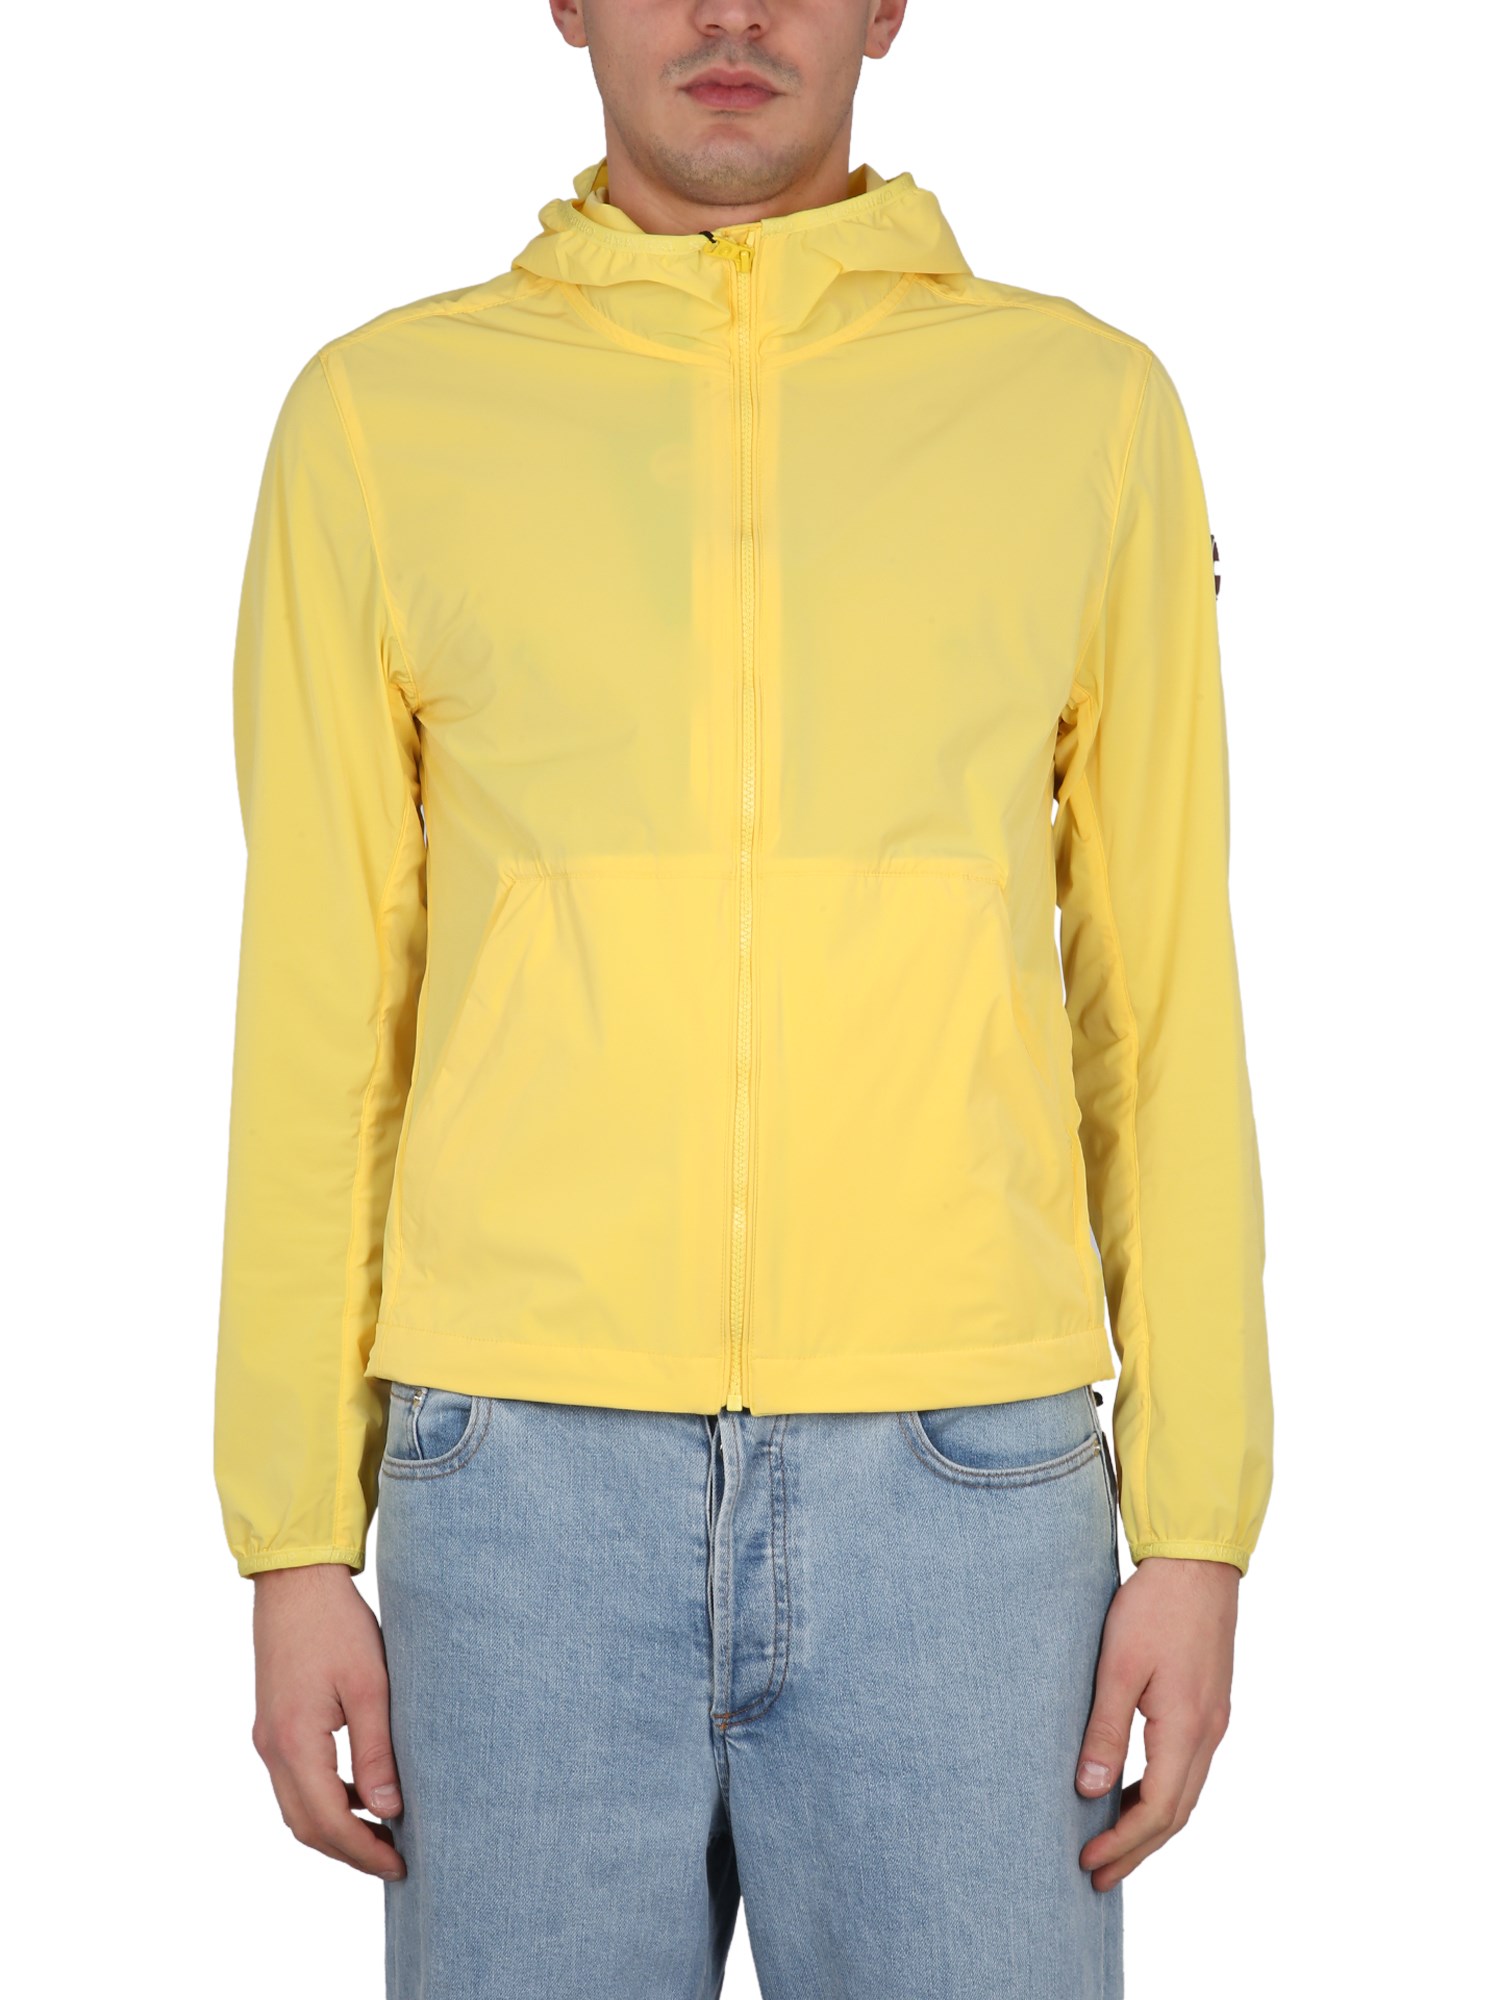 Colmar Originals Hooded Jacket In Yellow